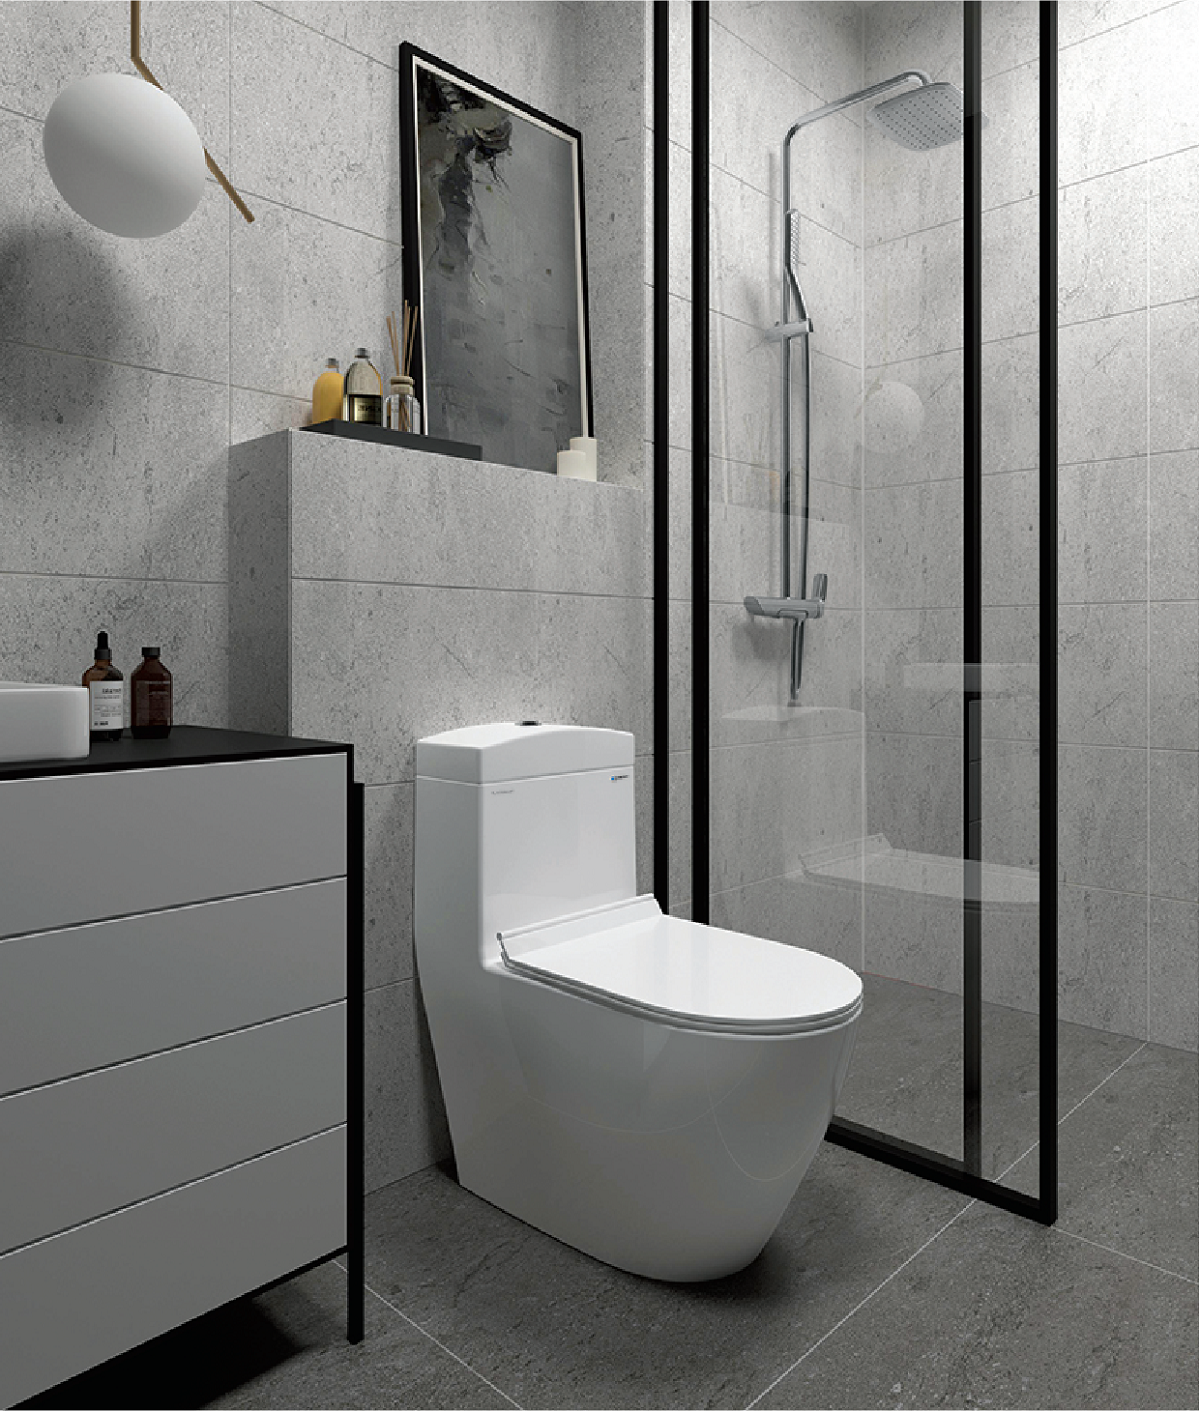 Cuộc thi thiết kế nội thất không gian tắm đầu tiên năm 2021  chính thức khởi động